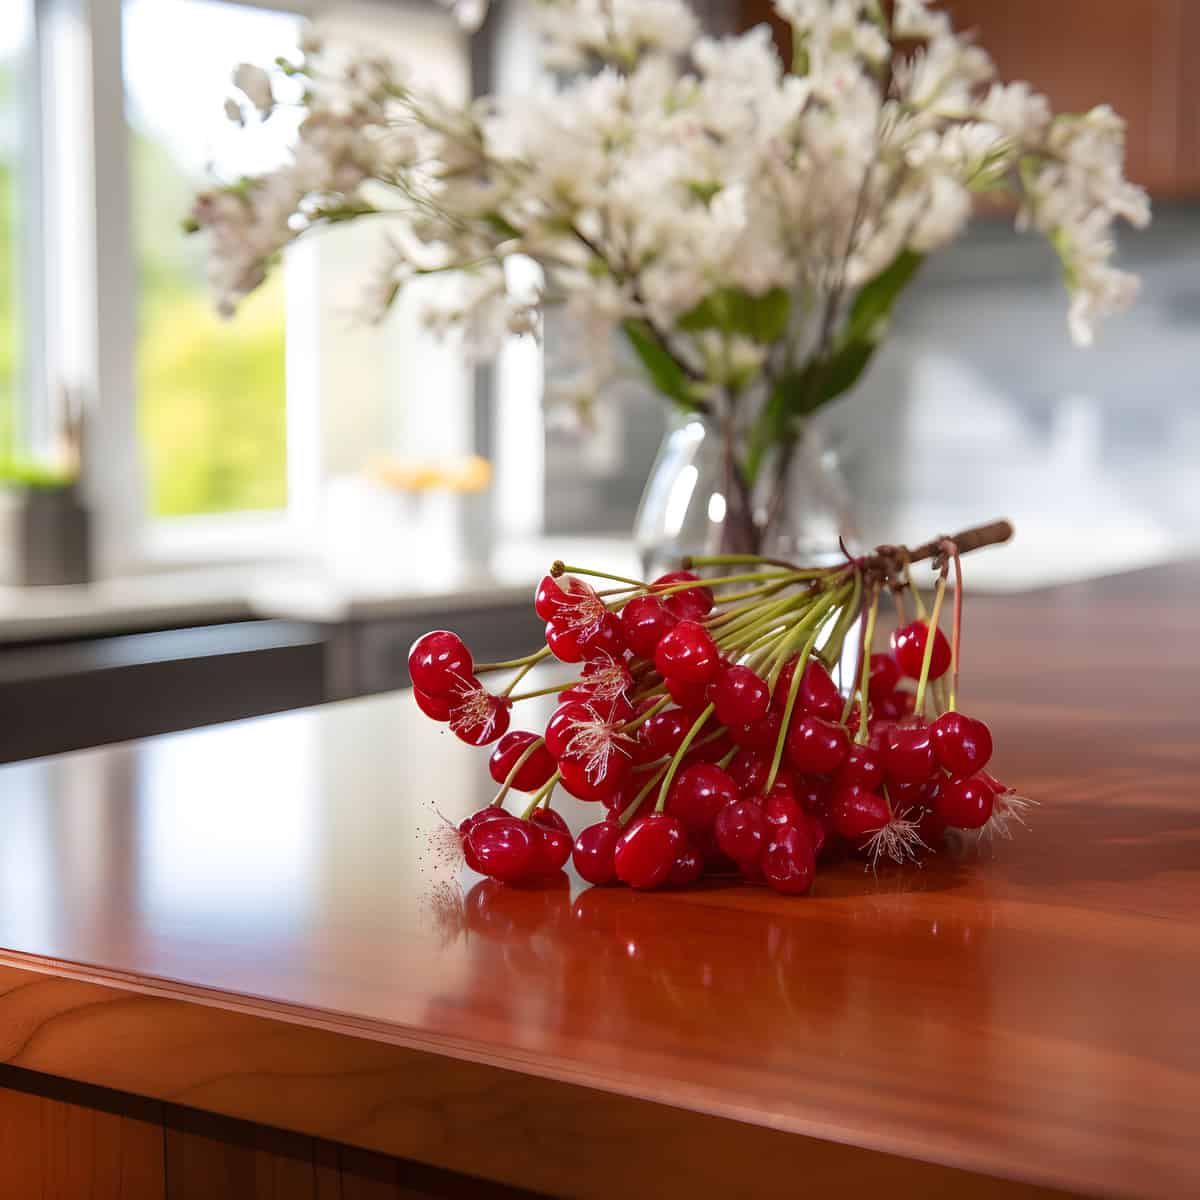 Cedar Bay Cherries on a kitchen counter